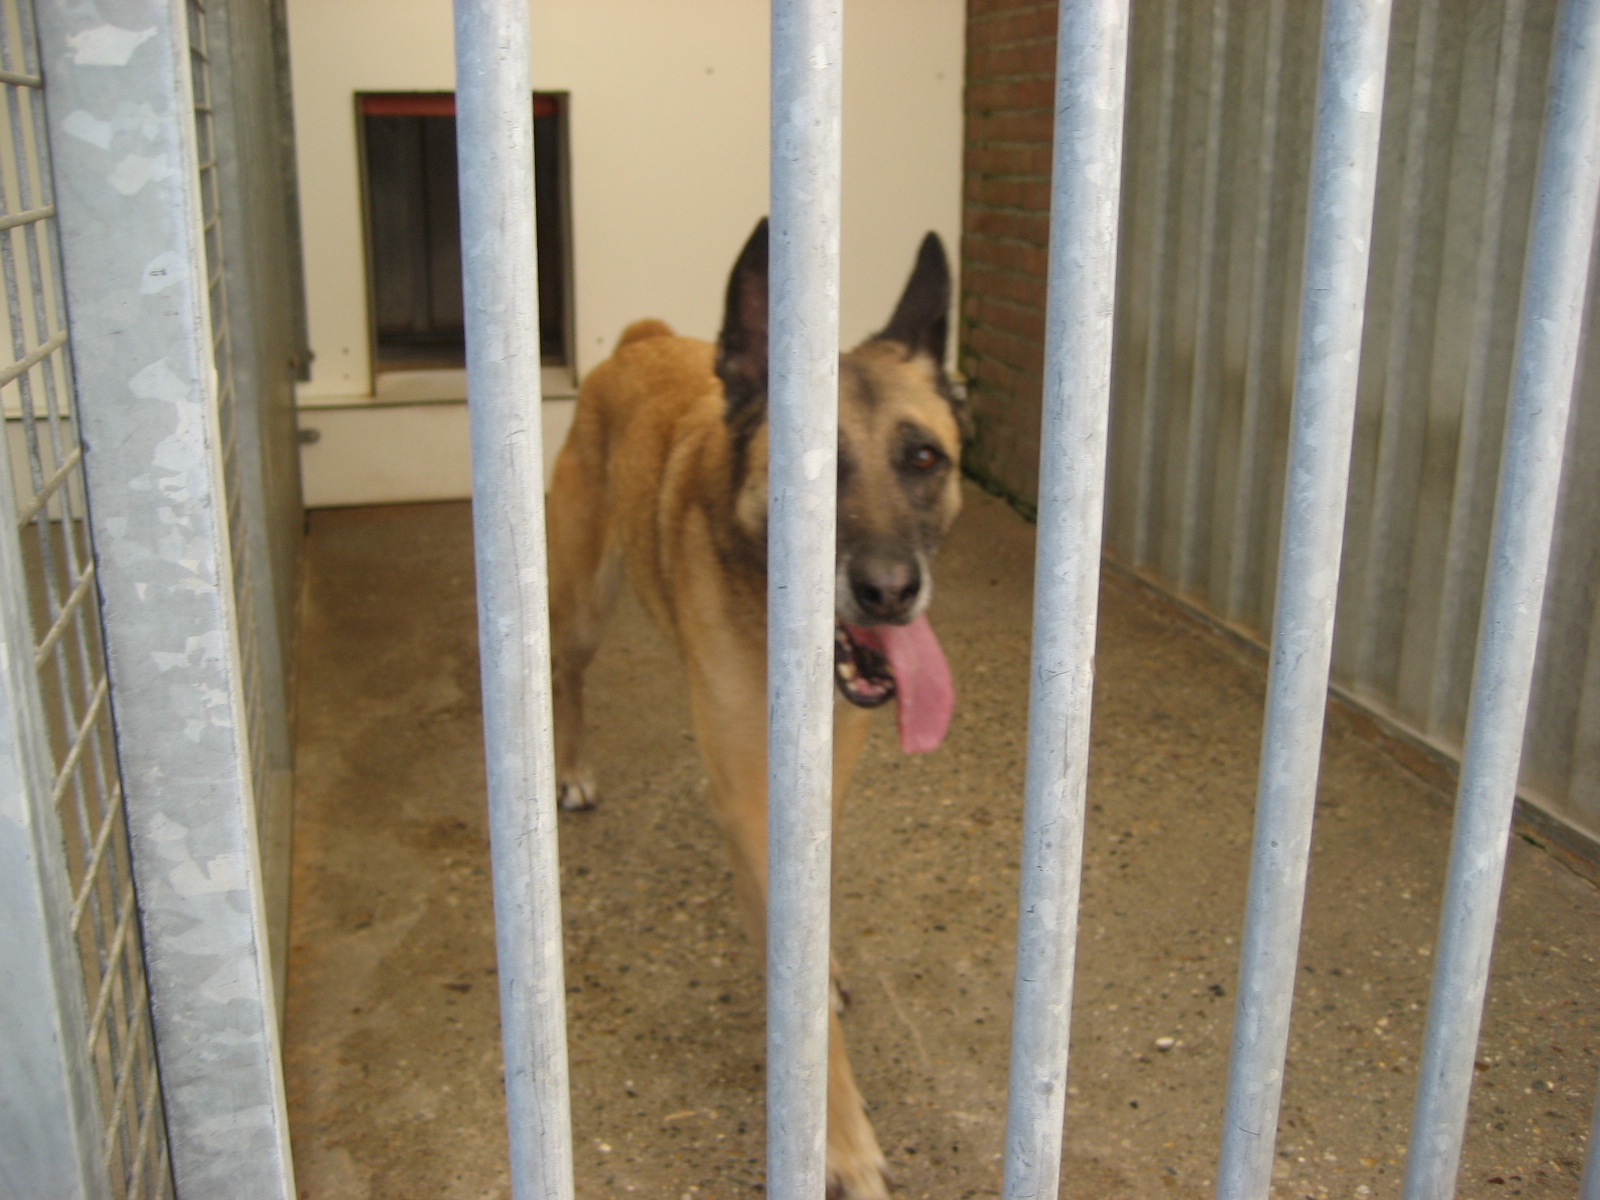 In beslaggenomen huishonden voor veel geld verkocht als K9 security dogs naar buitenland